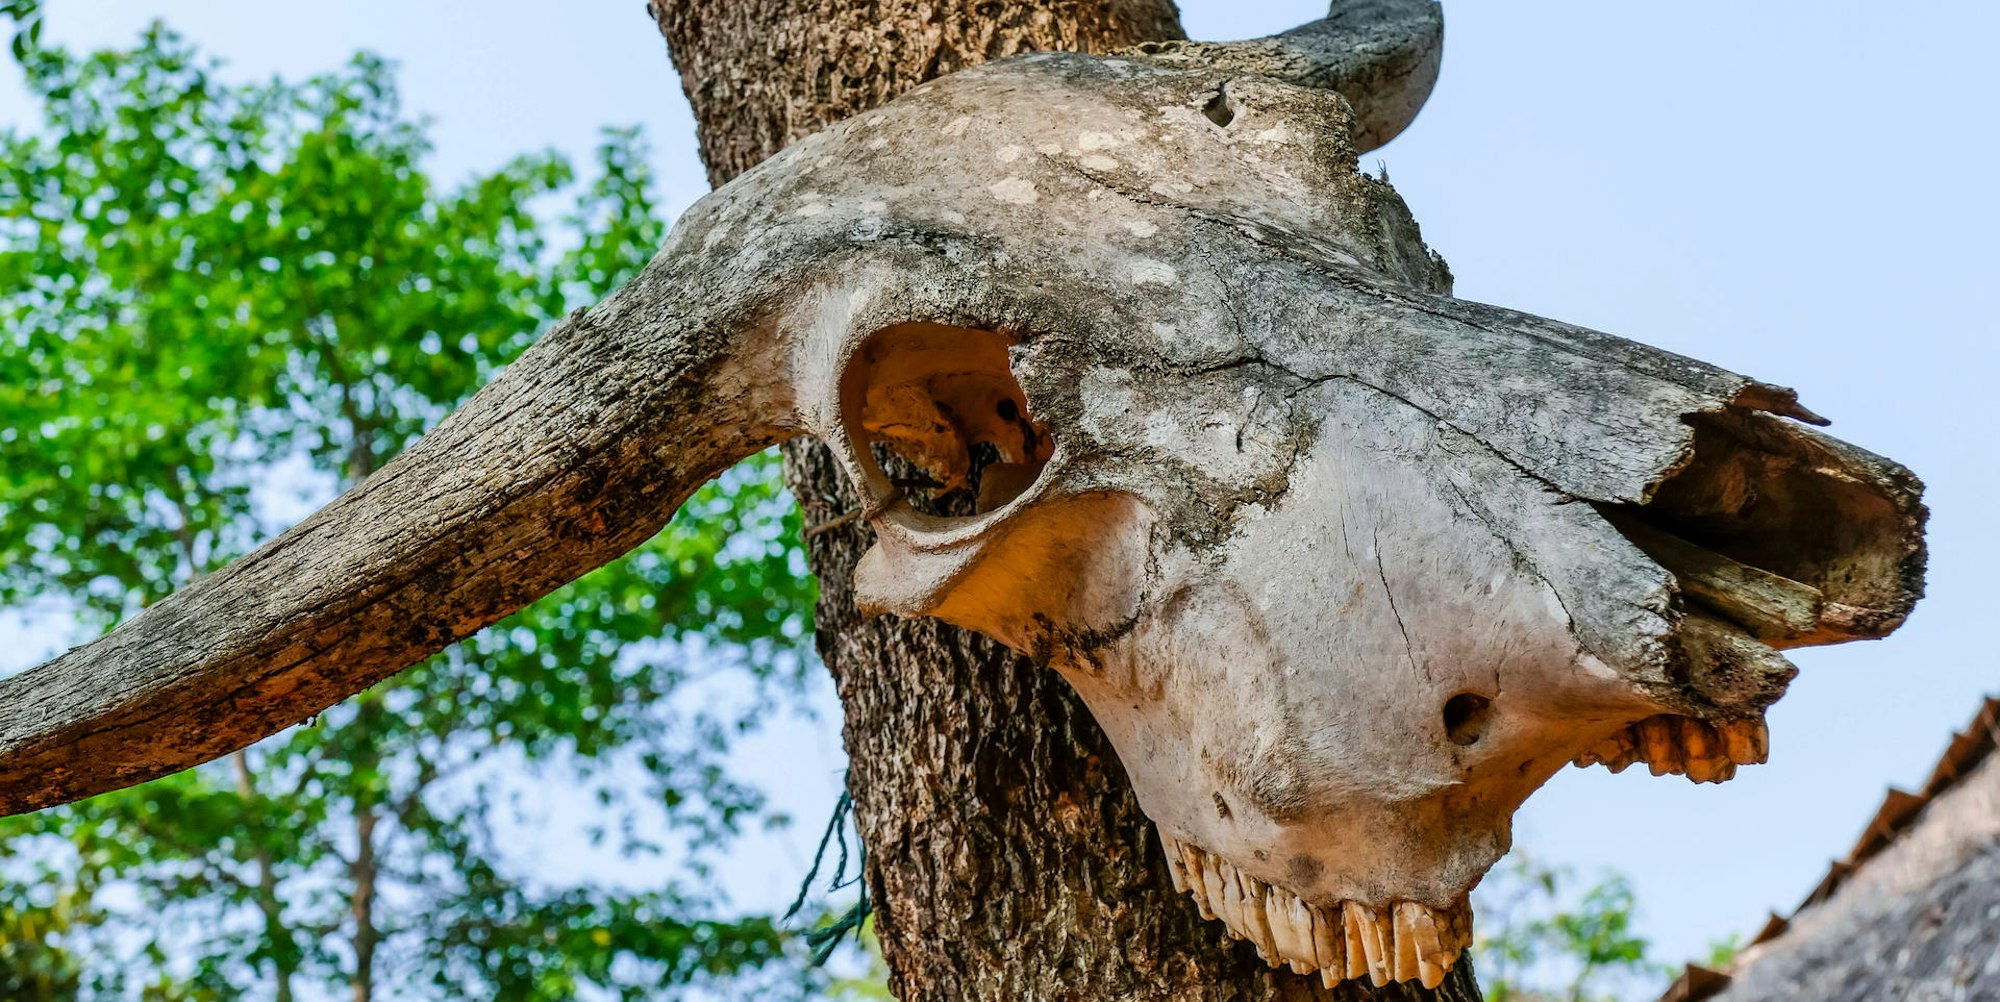 Büffelschädel an Baum imago